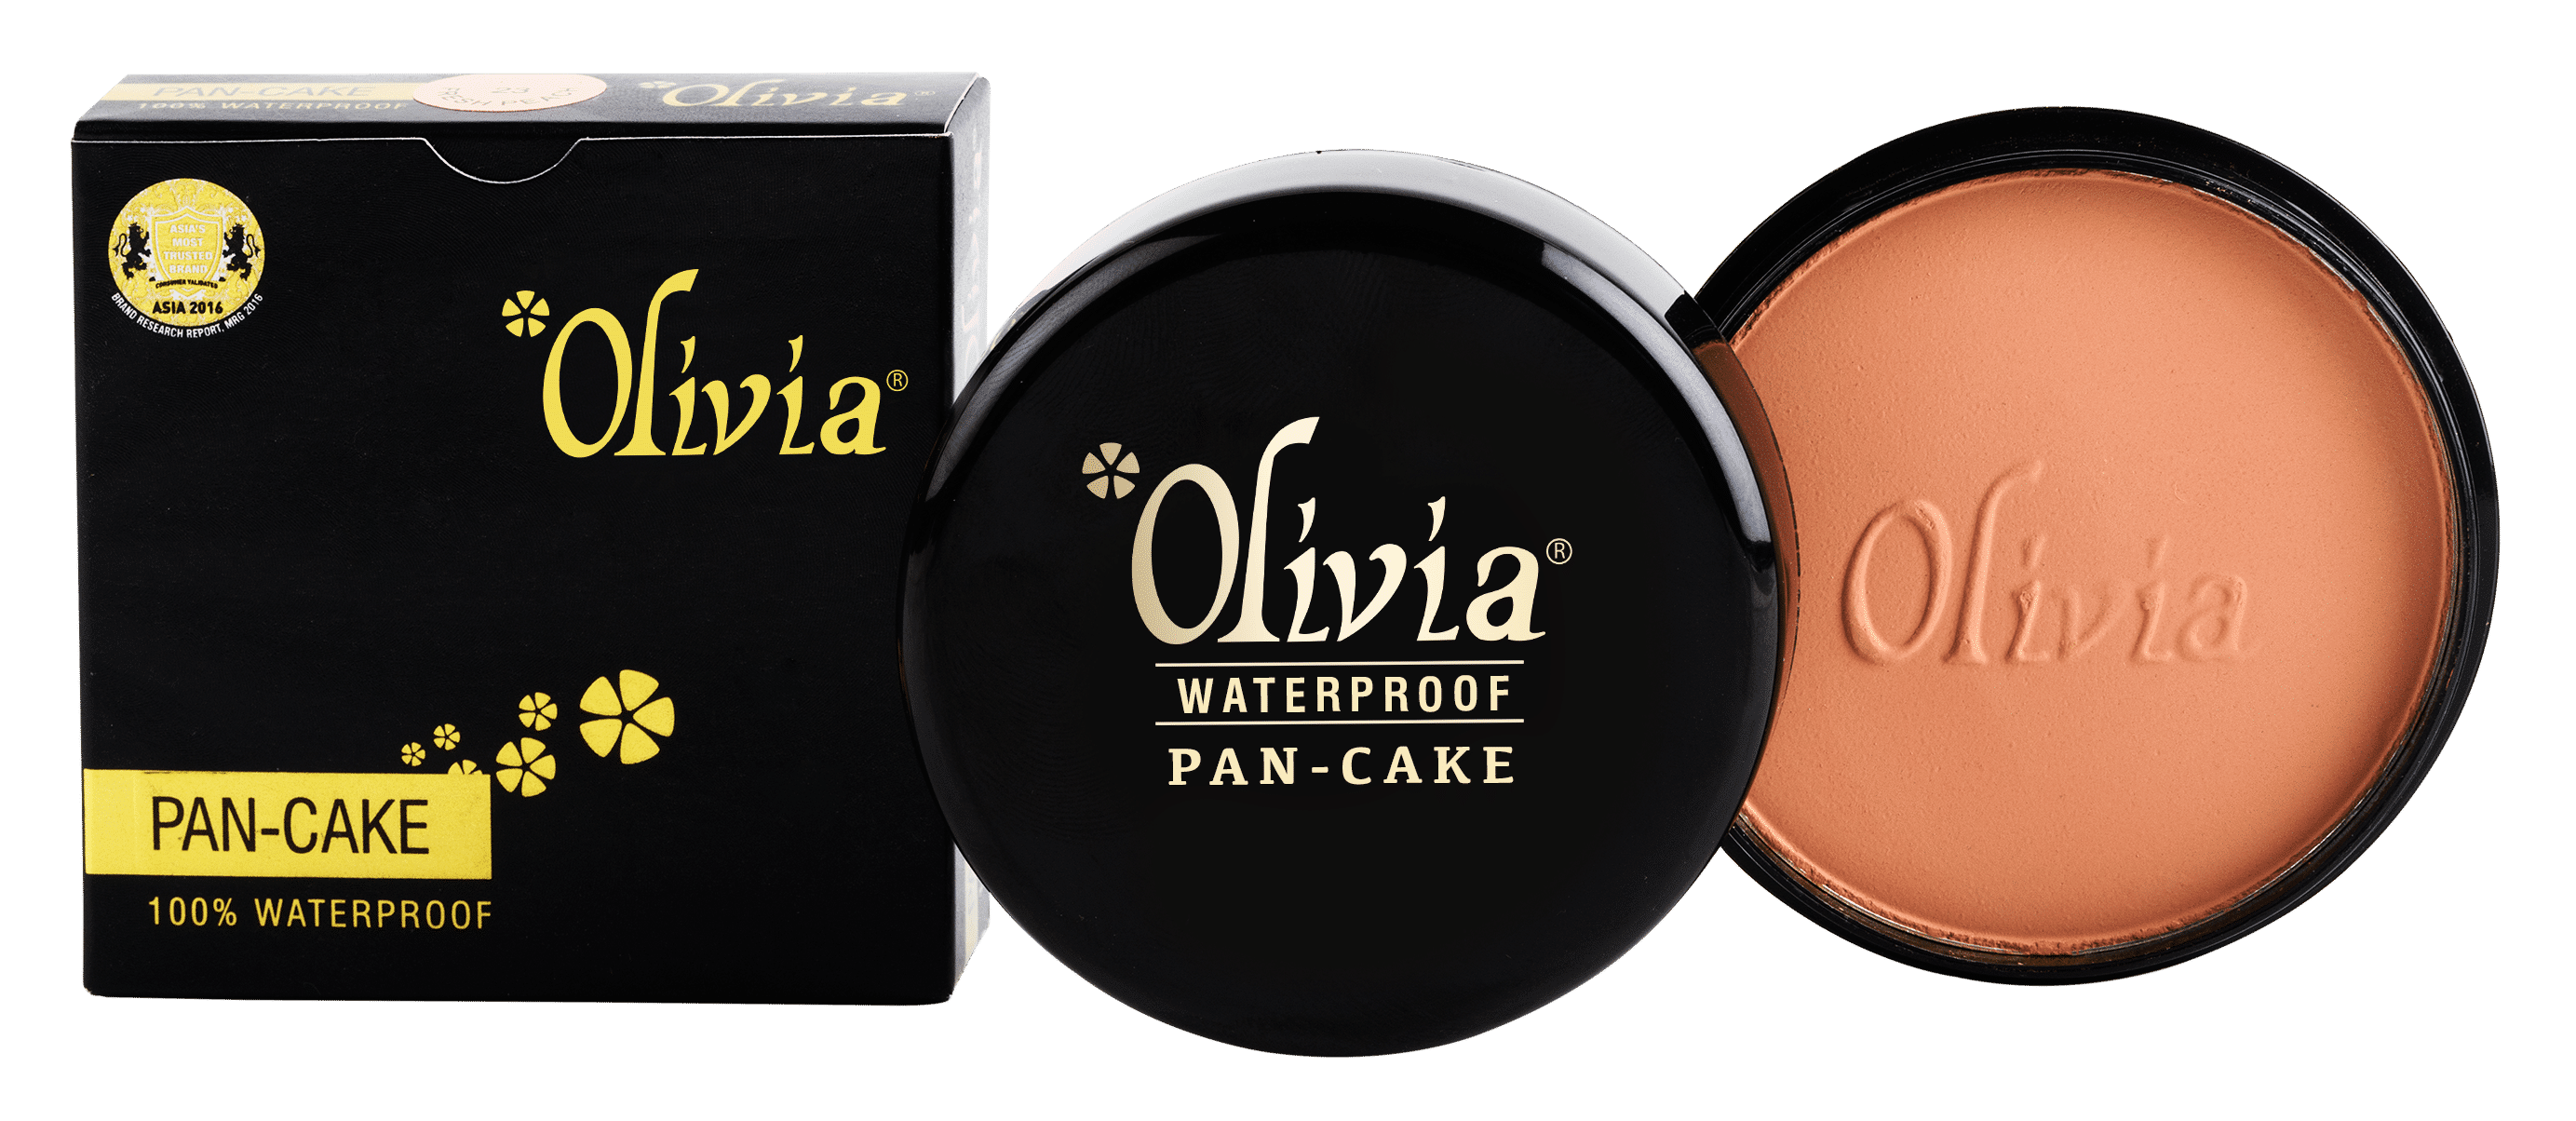 Olivia Waterproof Pan-Cake Reviews Online | Nykaa